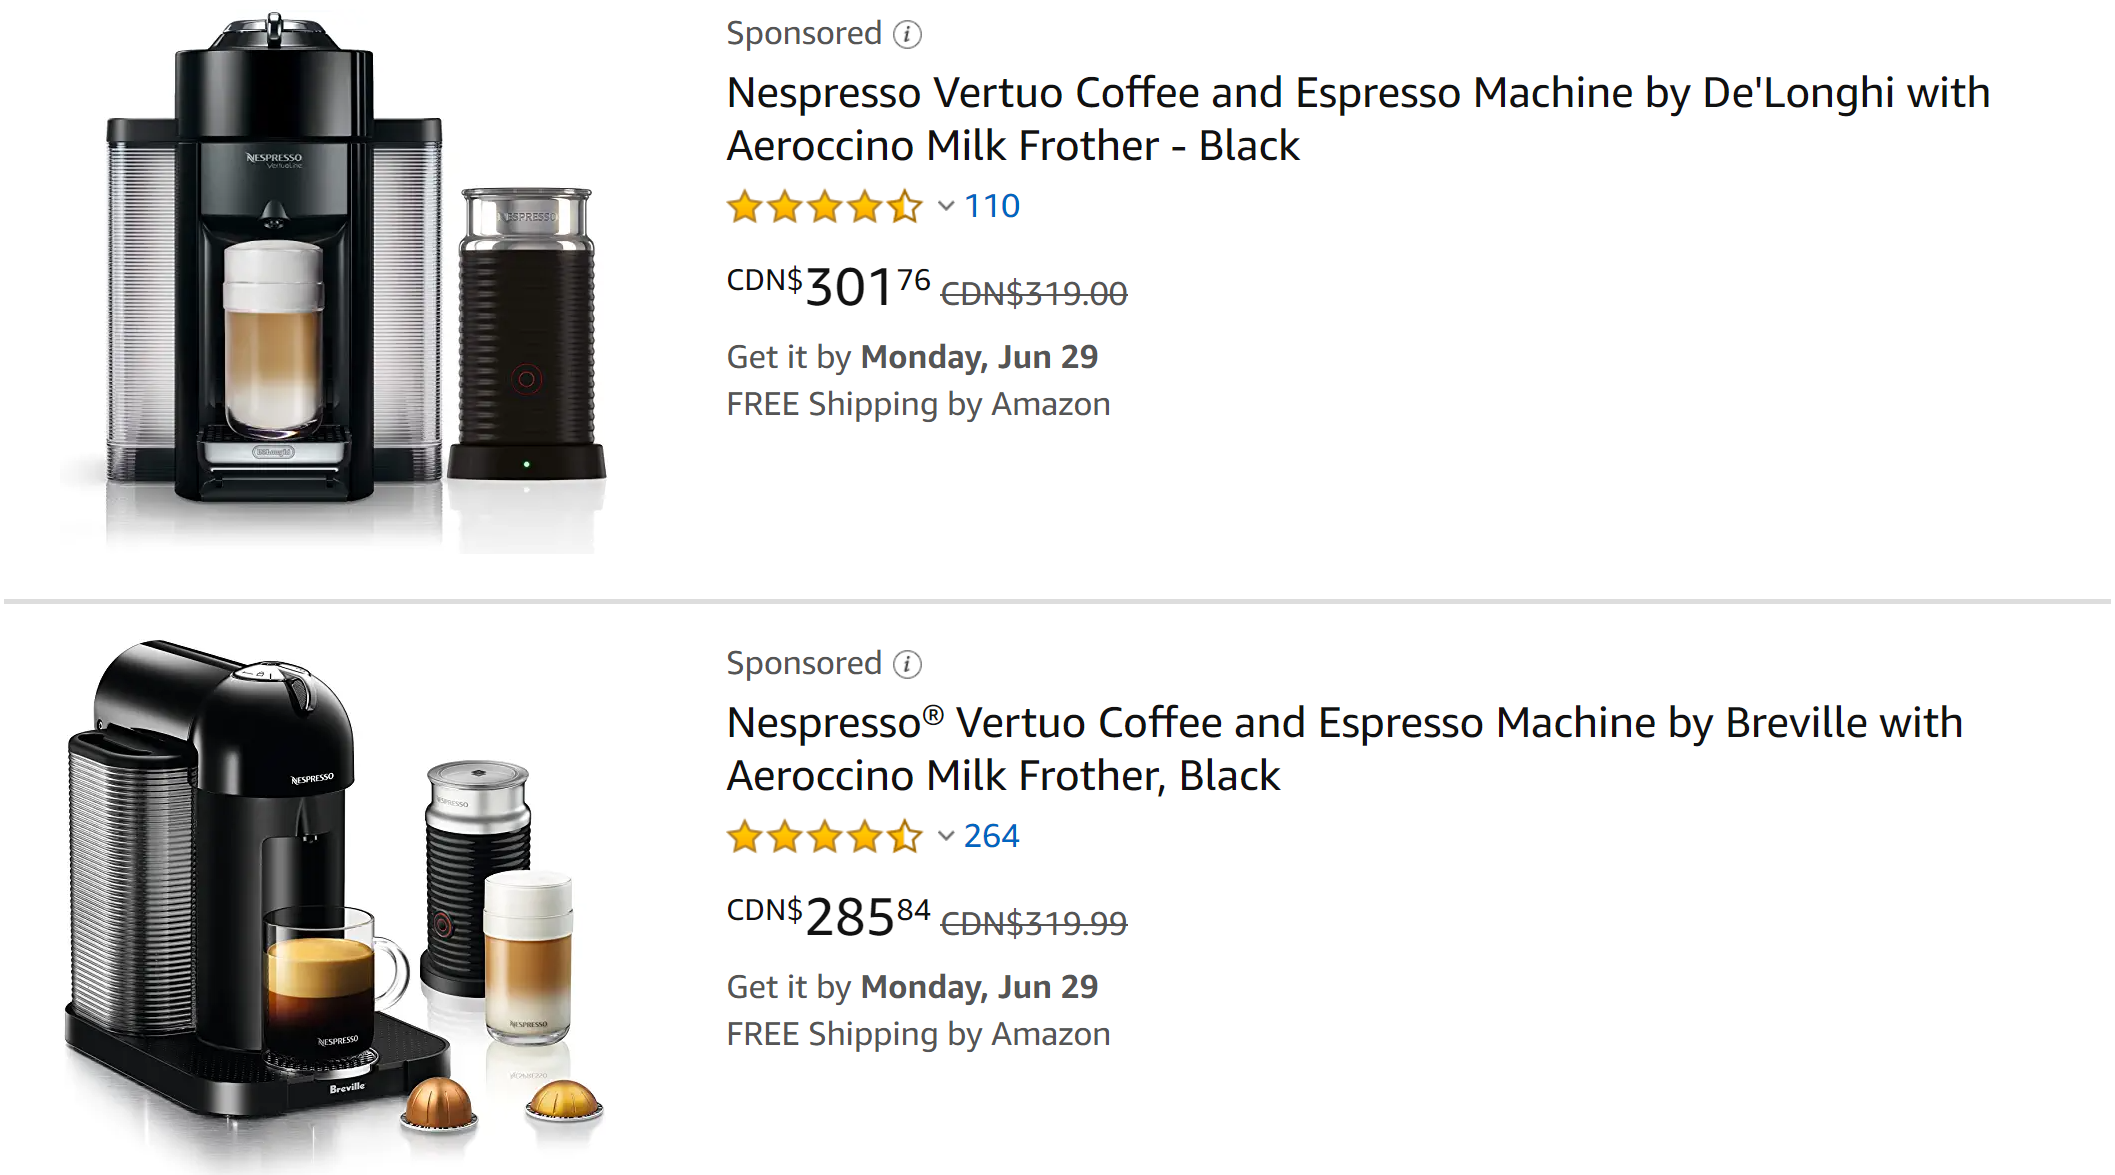 Nespresso咖啡机低至5.5折!$99收Inissia咖啡机